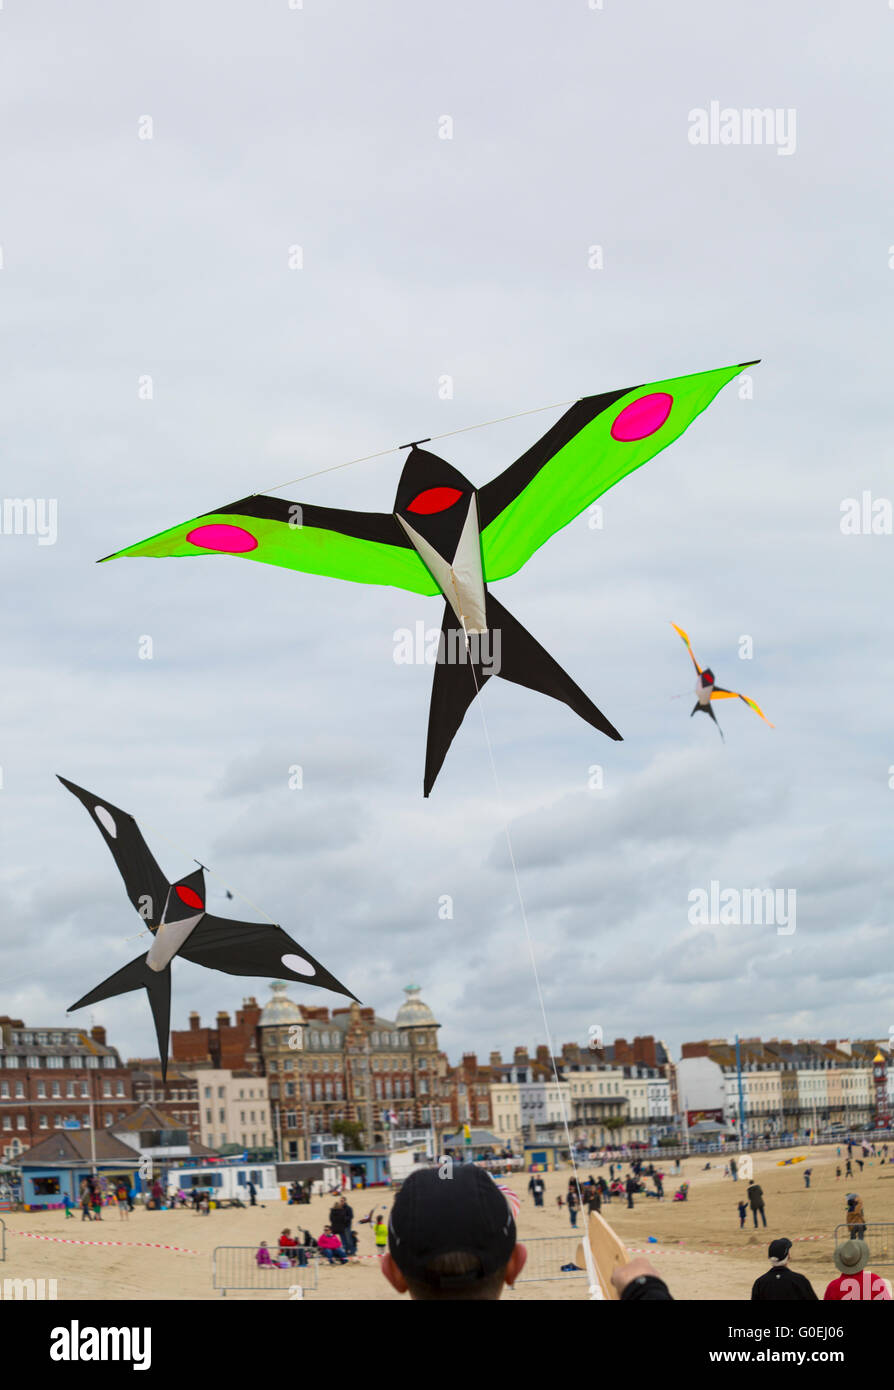 Weymouth, Dorset, Vereinigtes Königreich, 1. Mai 2016. Besucher begeben sich zum Weymouth Beach, um die wundervolle Ausstellung von Drachen zu sehen, die beim Weymouth Kite Festival geflogen werden, Drachen in Form von Vögeln, die am blauen Himmel fliegen. Kredit: Carolyn Jenkins/Alamy Live News Stockfoto